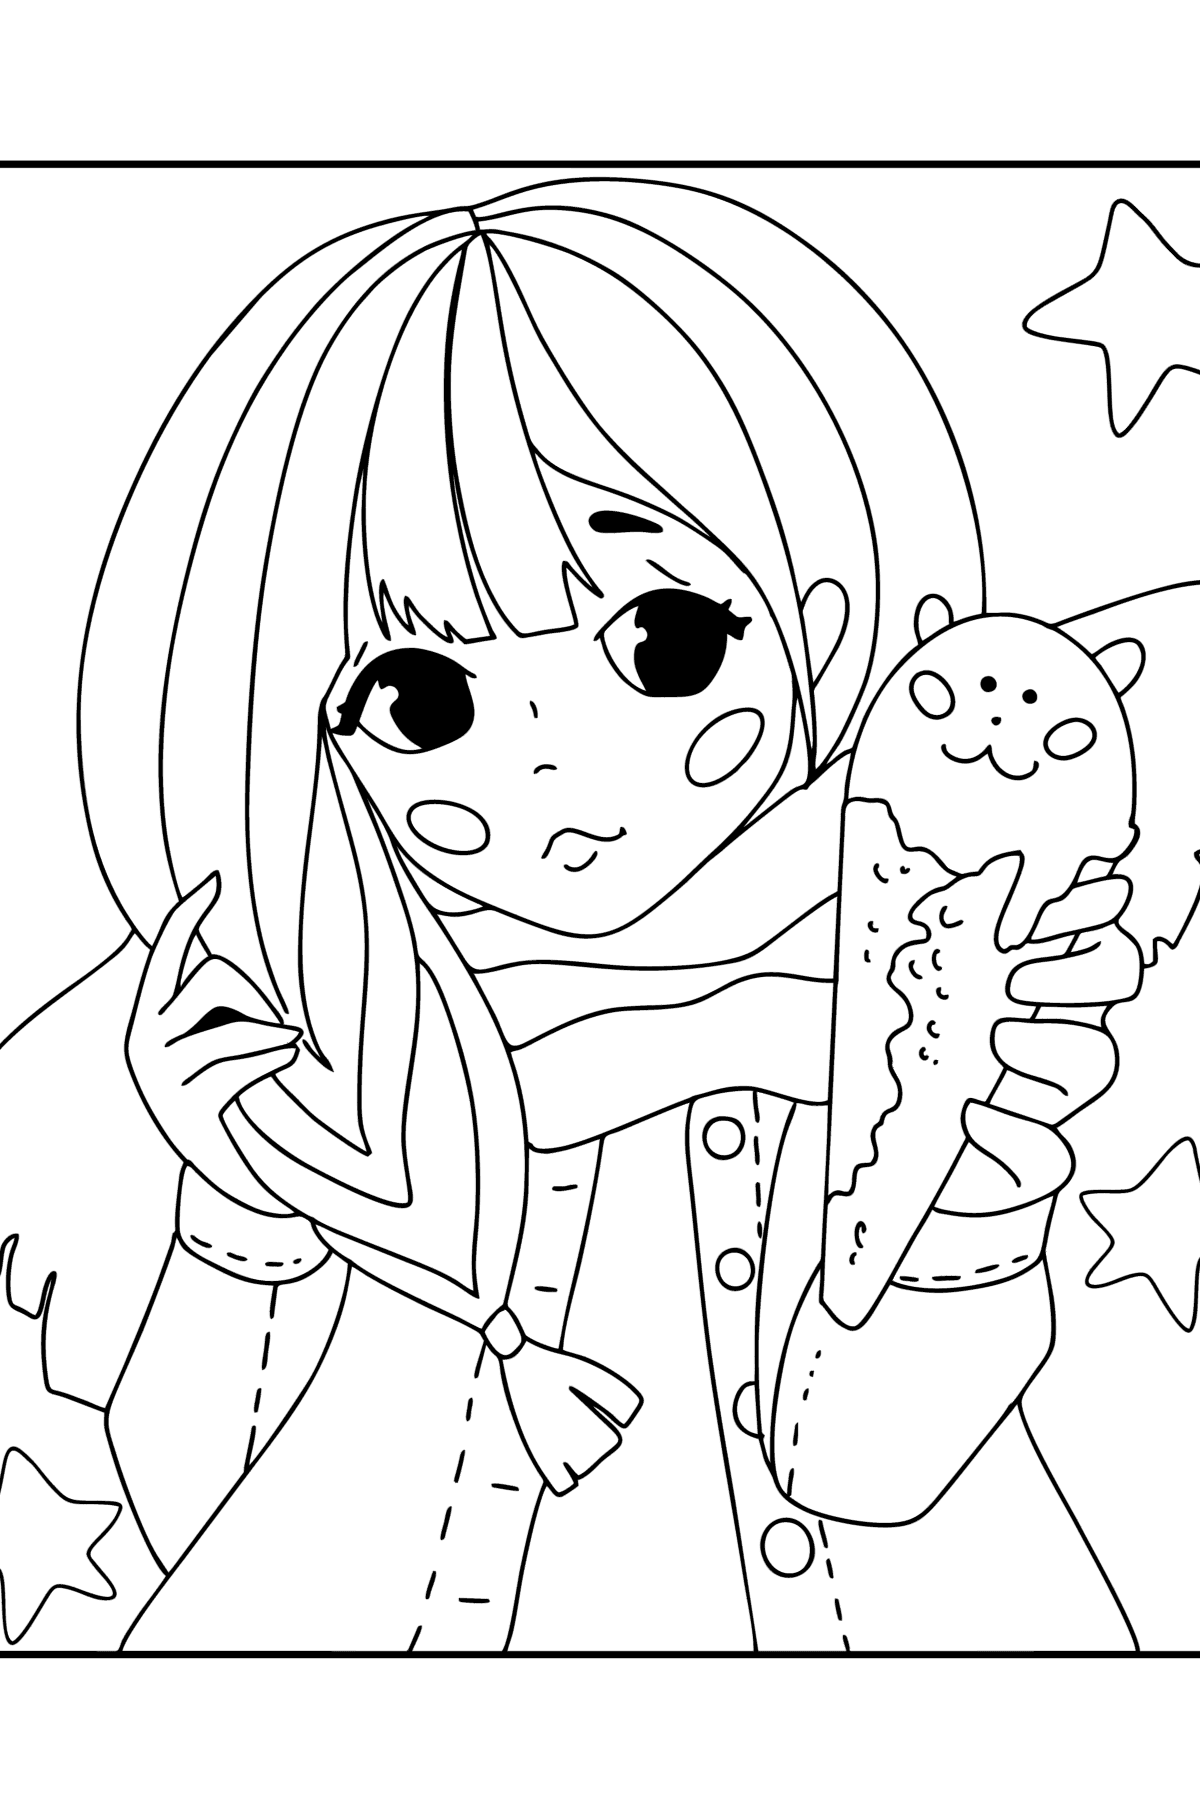 Desenho de uma linda garota de anime para colorir - Grátis